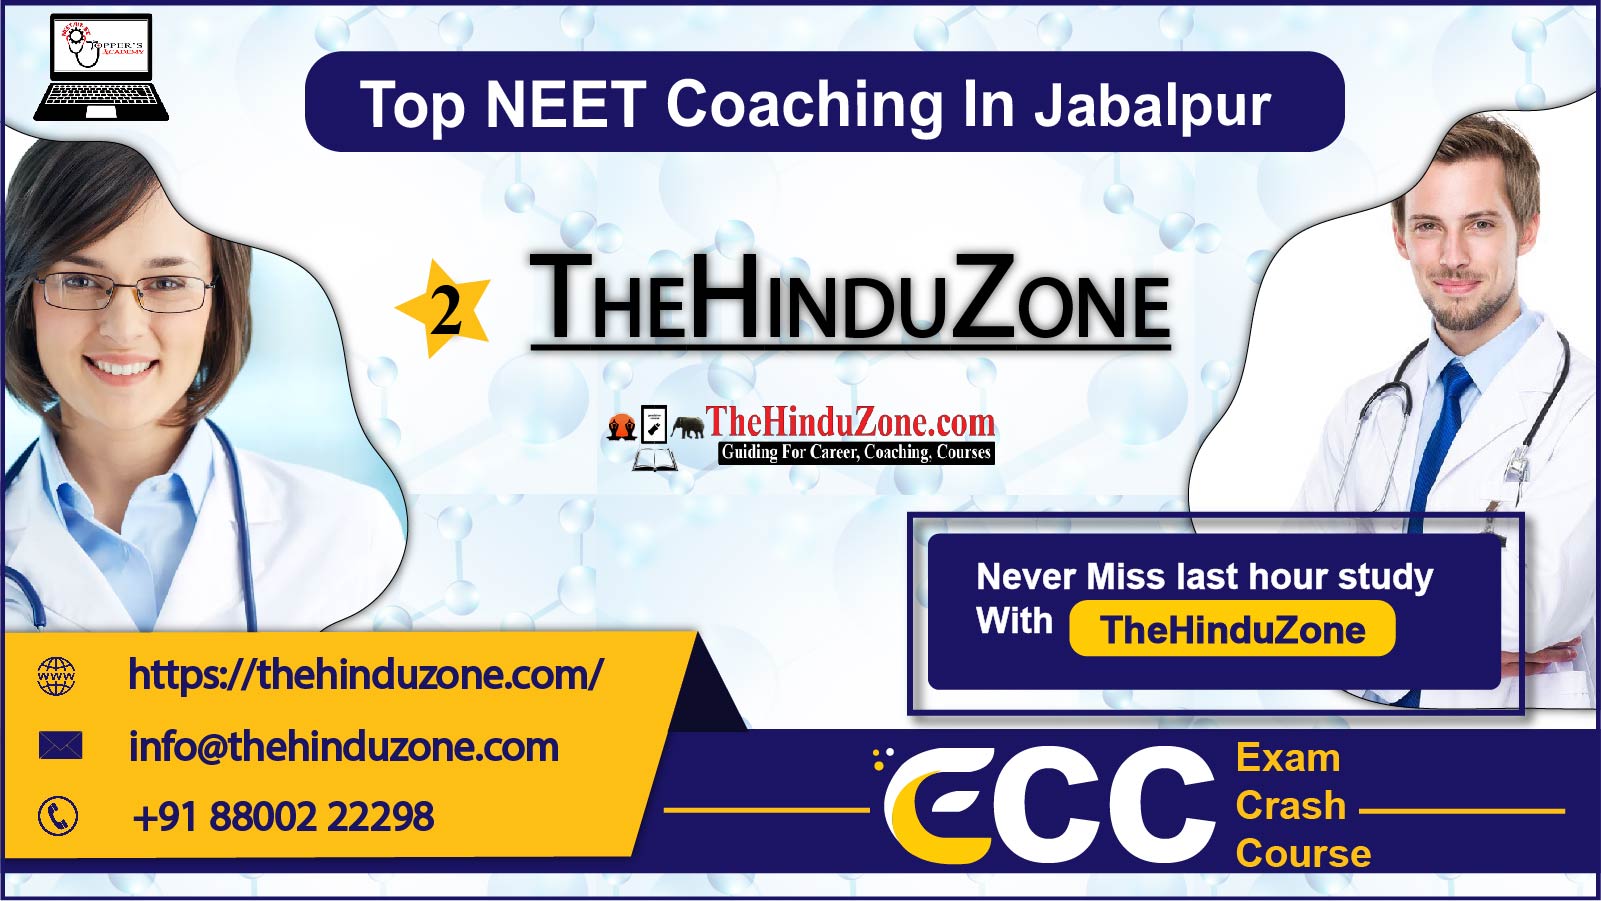 The Hinduzone NEET Coaching in Jabalpur